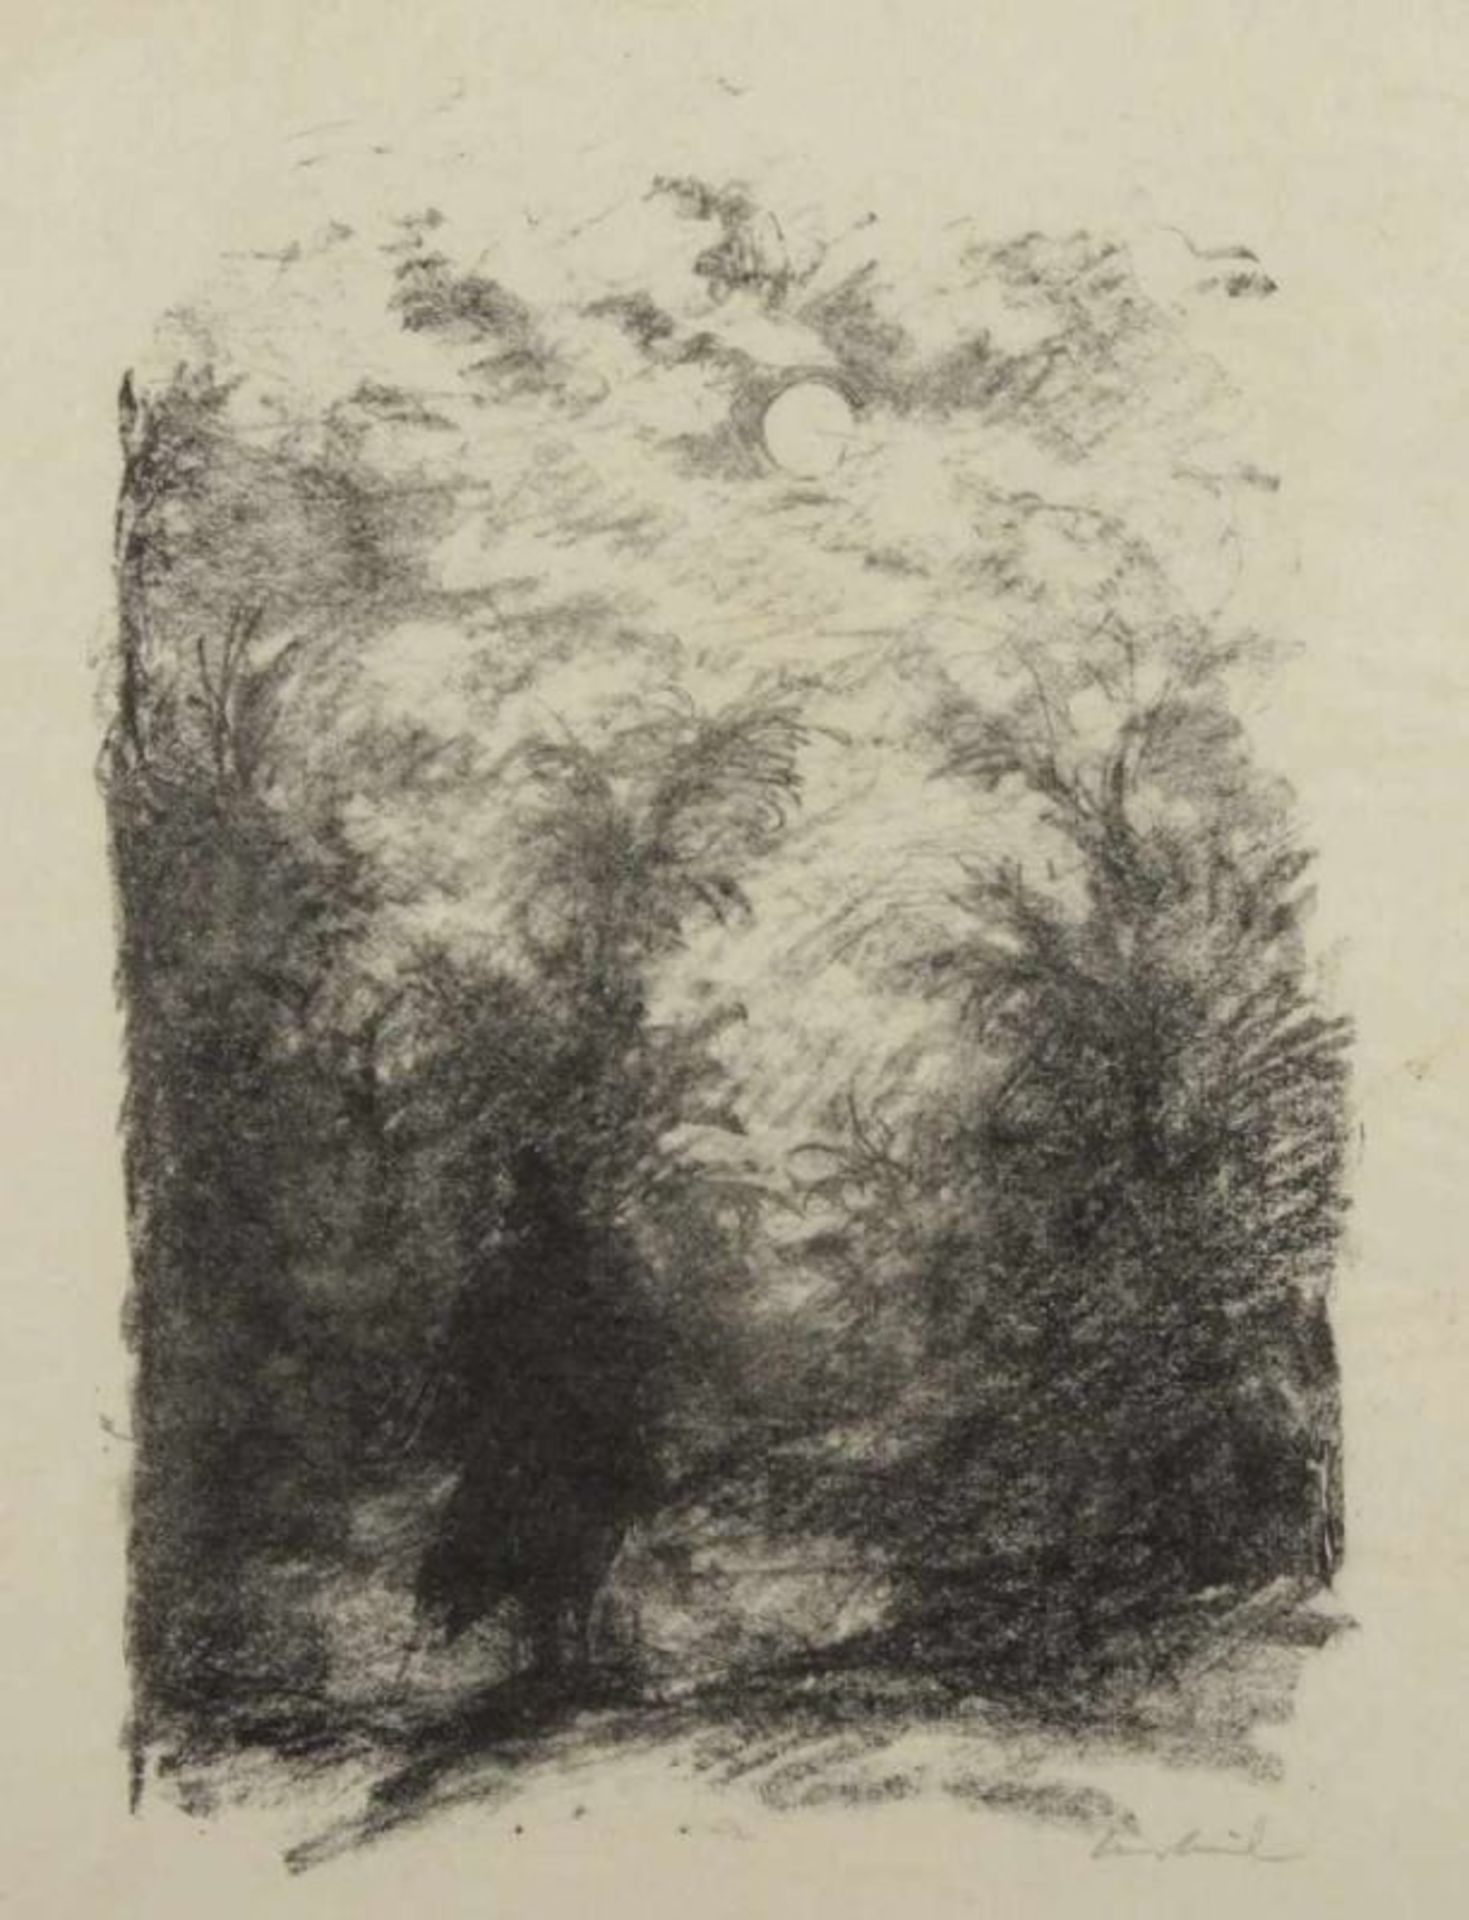 MEID, Hans, "Dem aufgehenden Monde", Original-Lithografie, 29 x 21,5, handsigniert, aus "Goethe